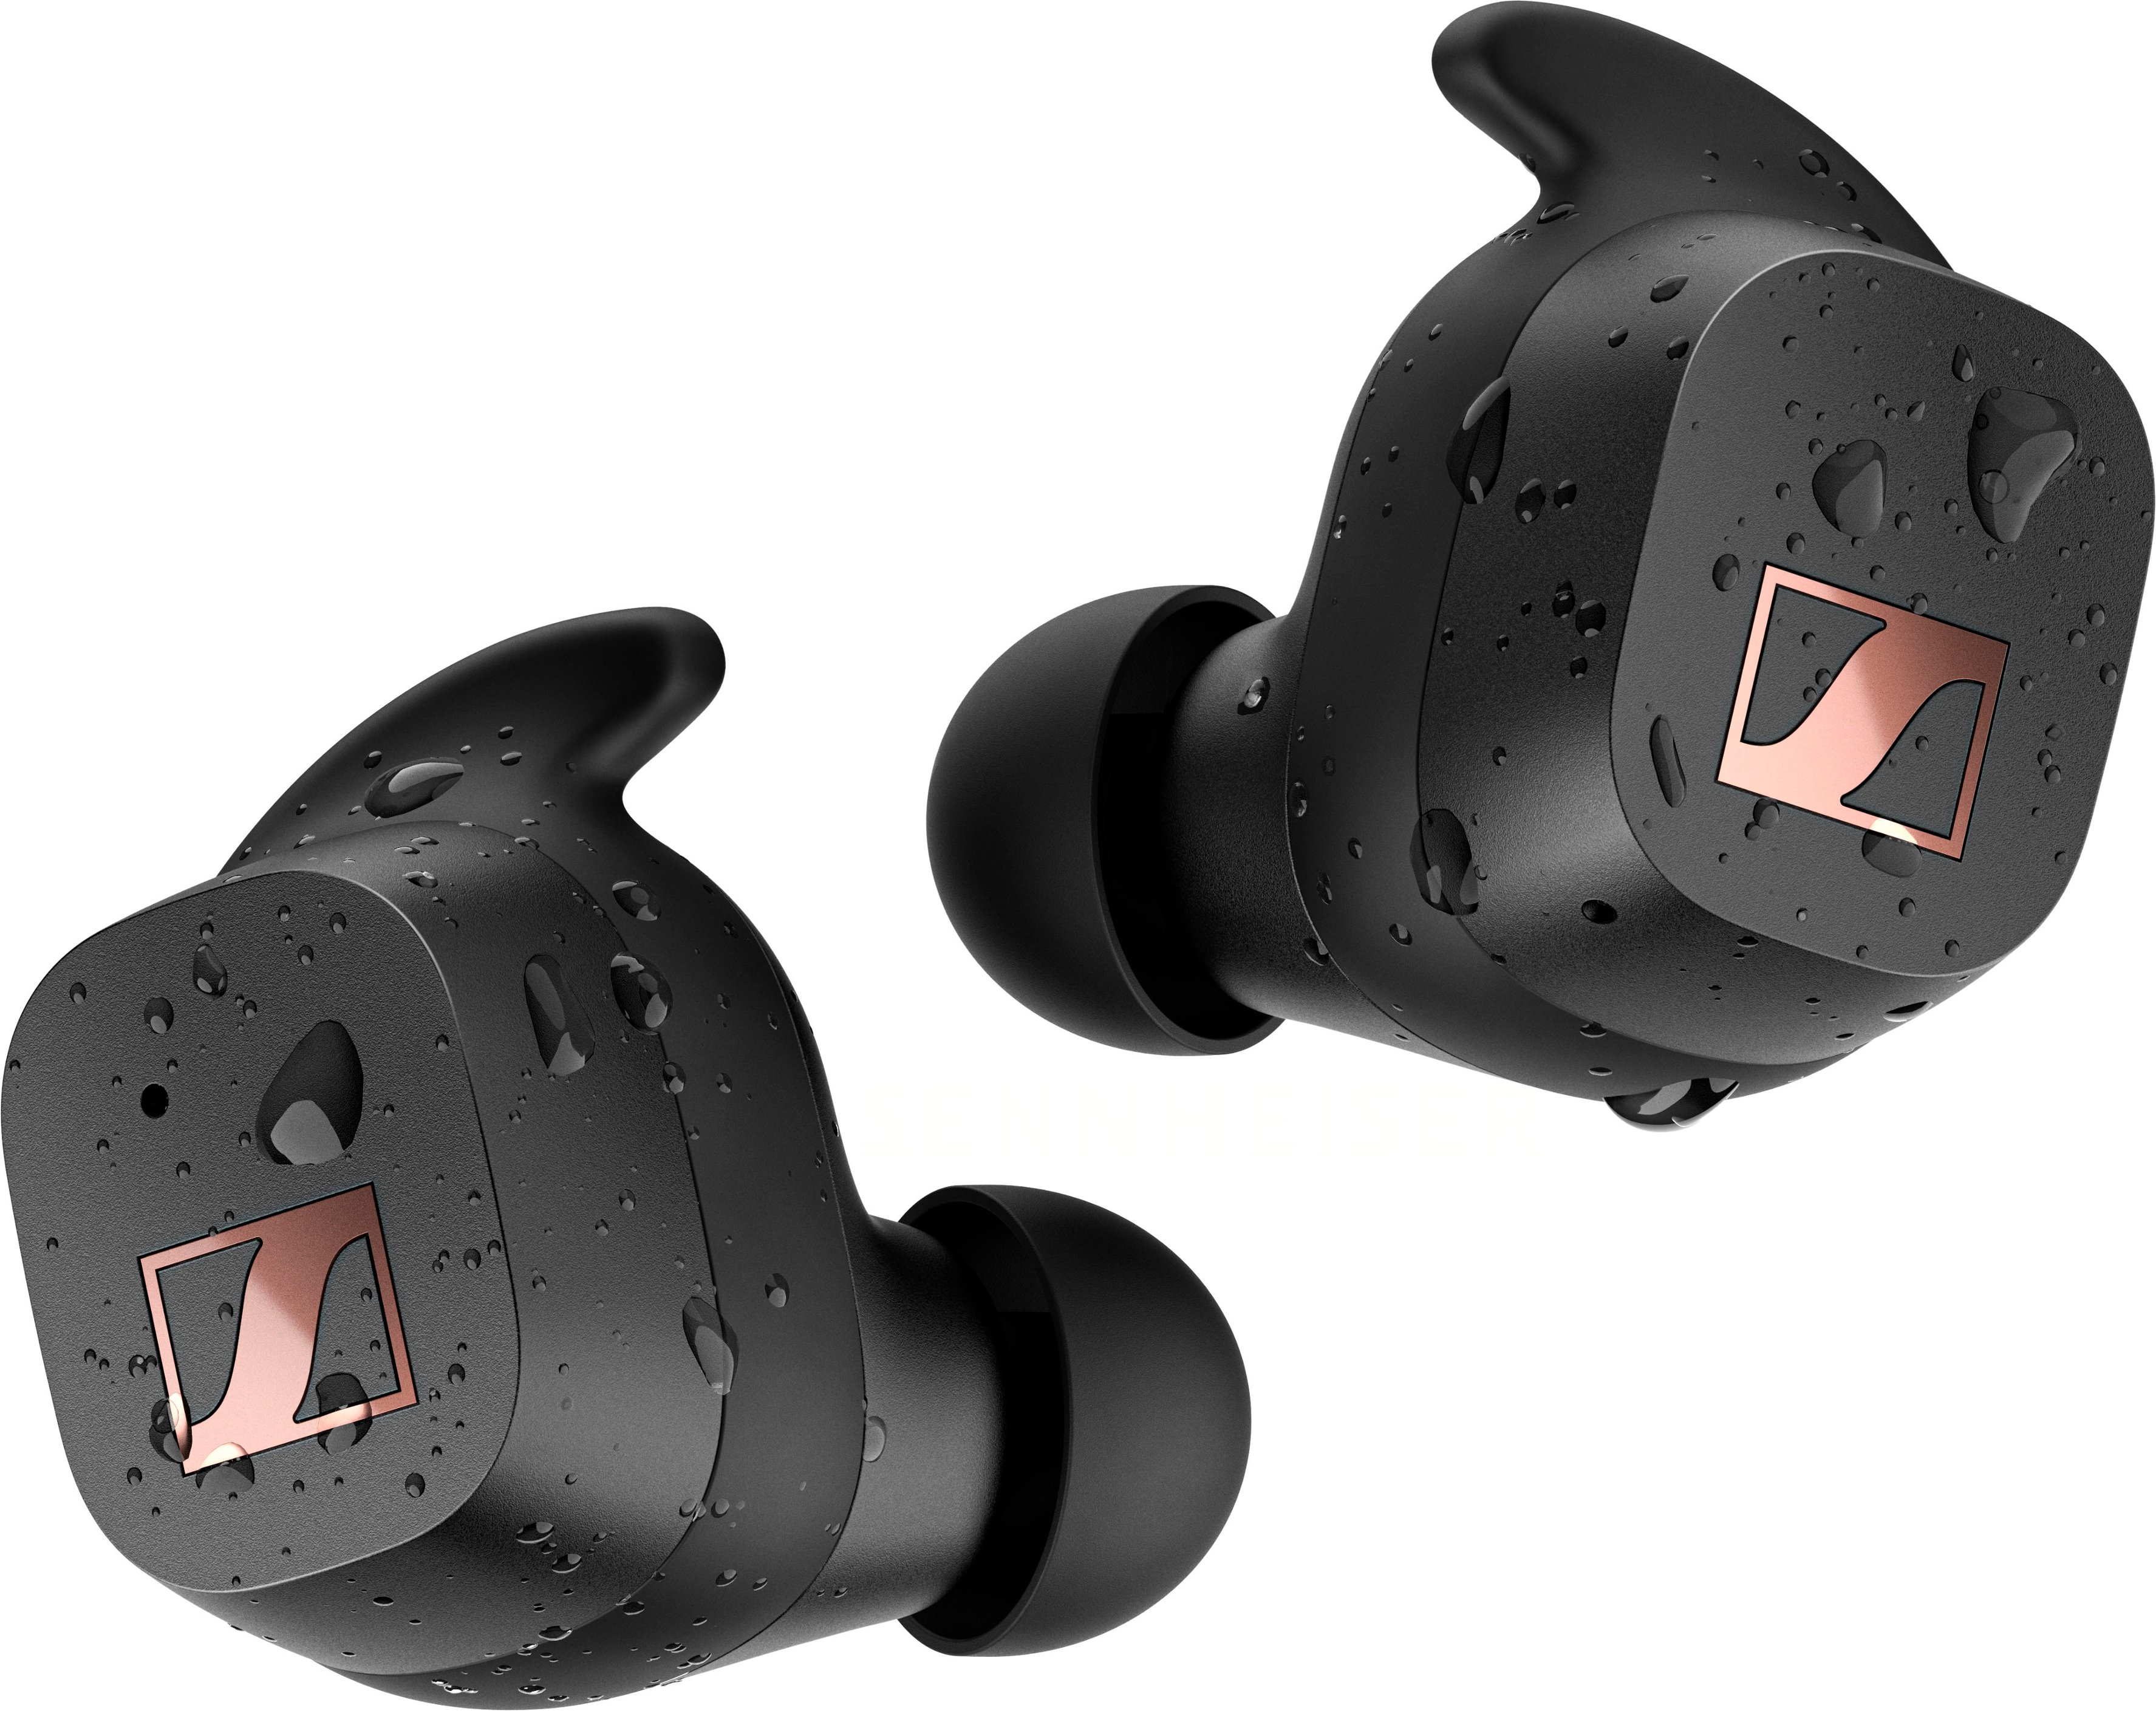 Sennheiser SPORT True Wireless In-Ear Headphones Black CX200TW1 Sport -  Best Buy